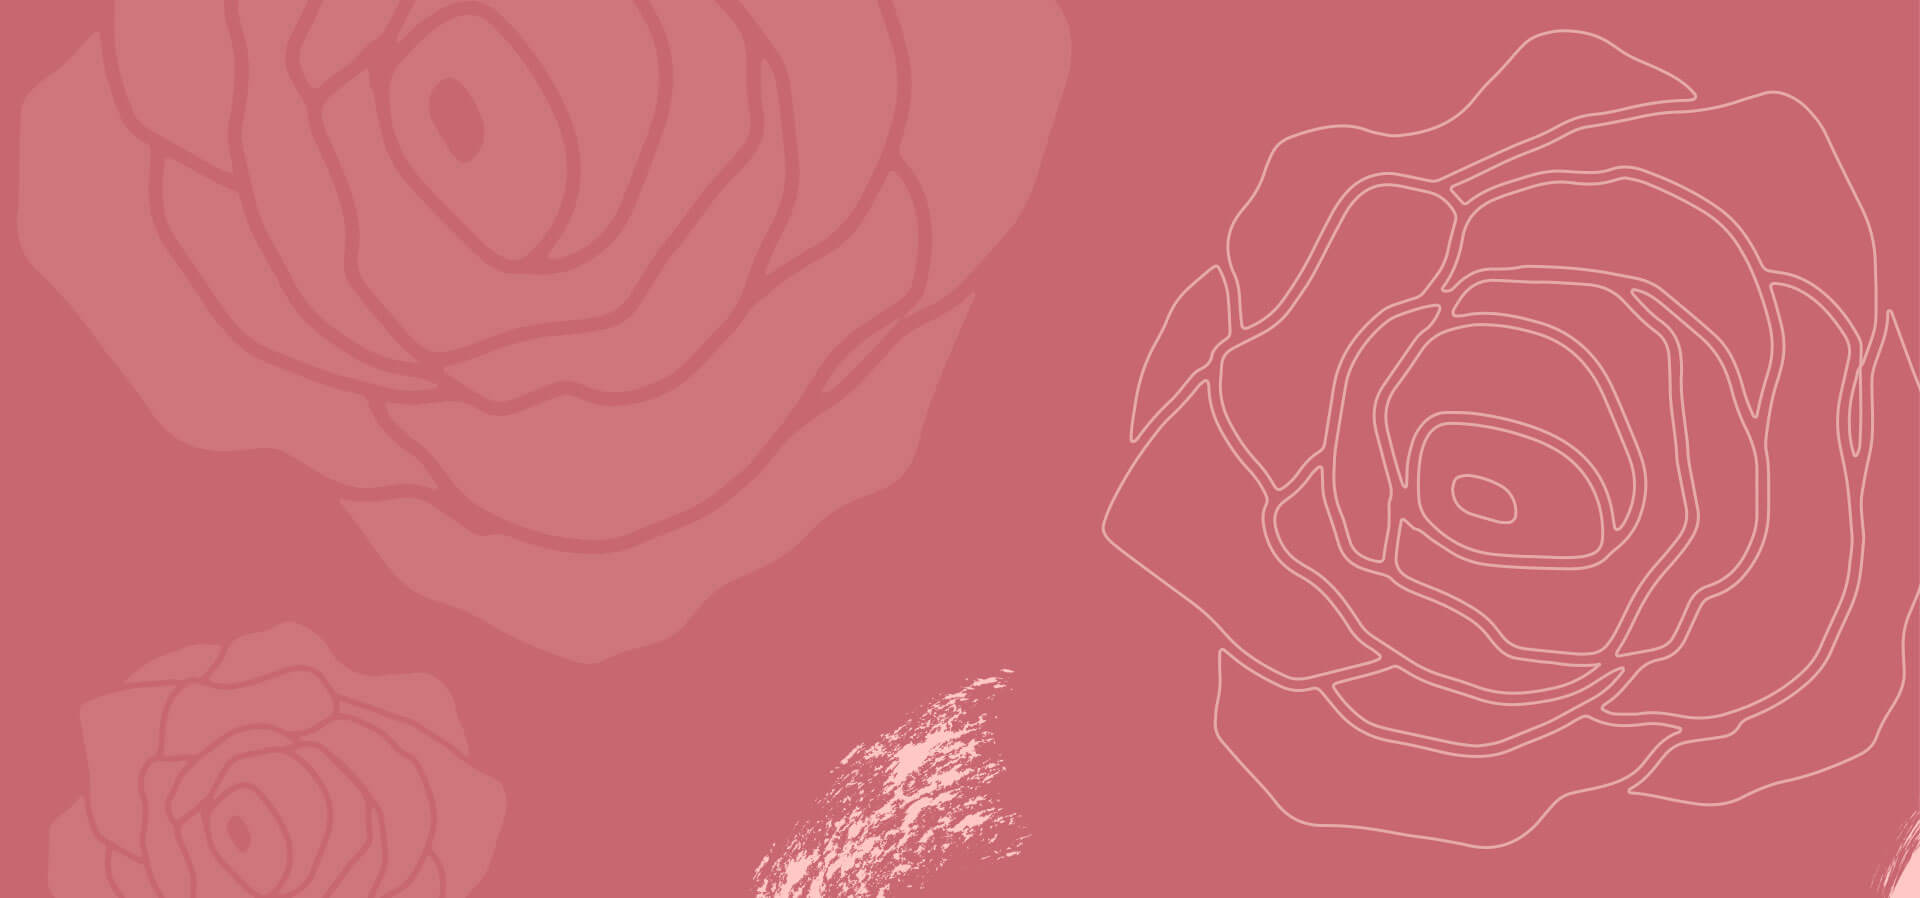 Imagem mostra o desenho de rosas em um fundo rosa.